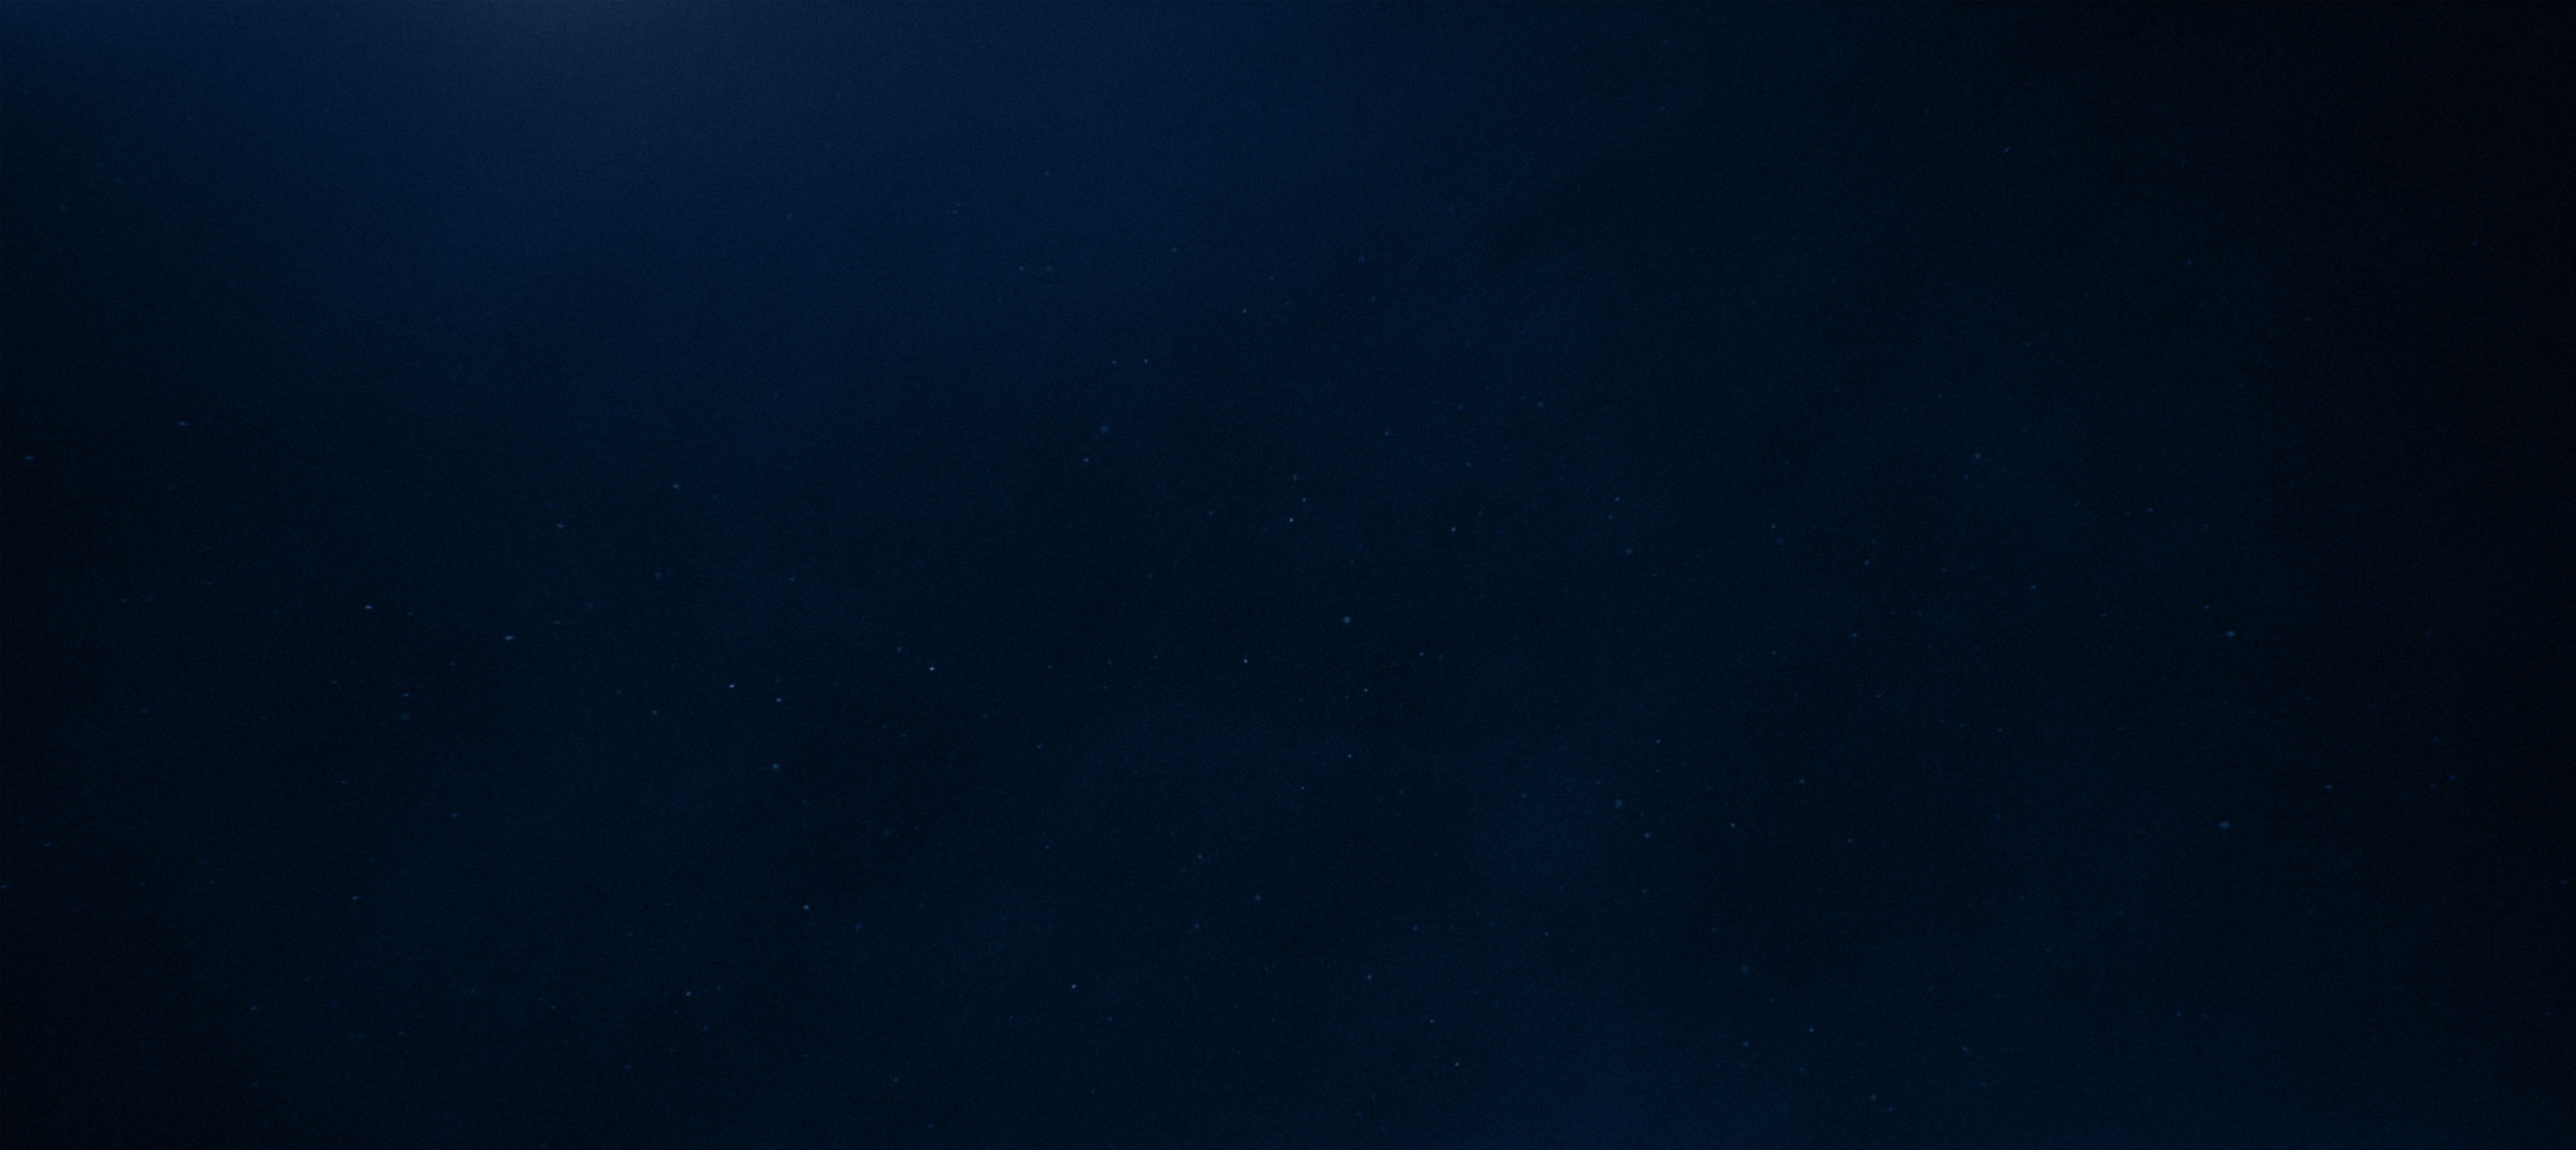 背景テクスチャ - 星が浮かぶ群青色の空